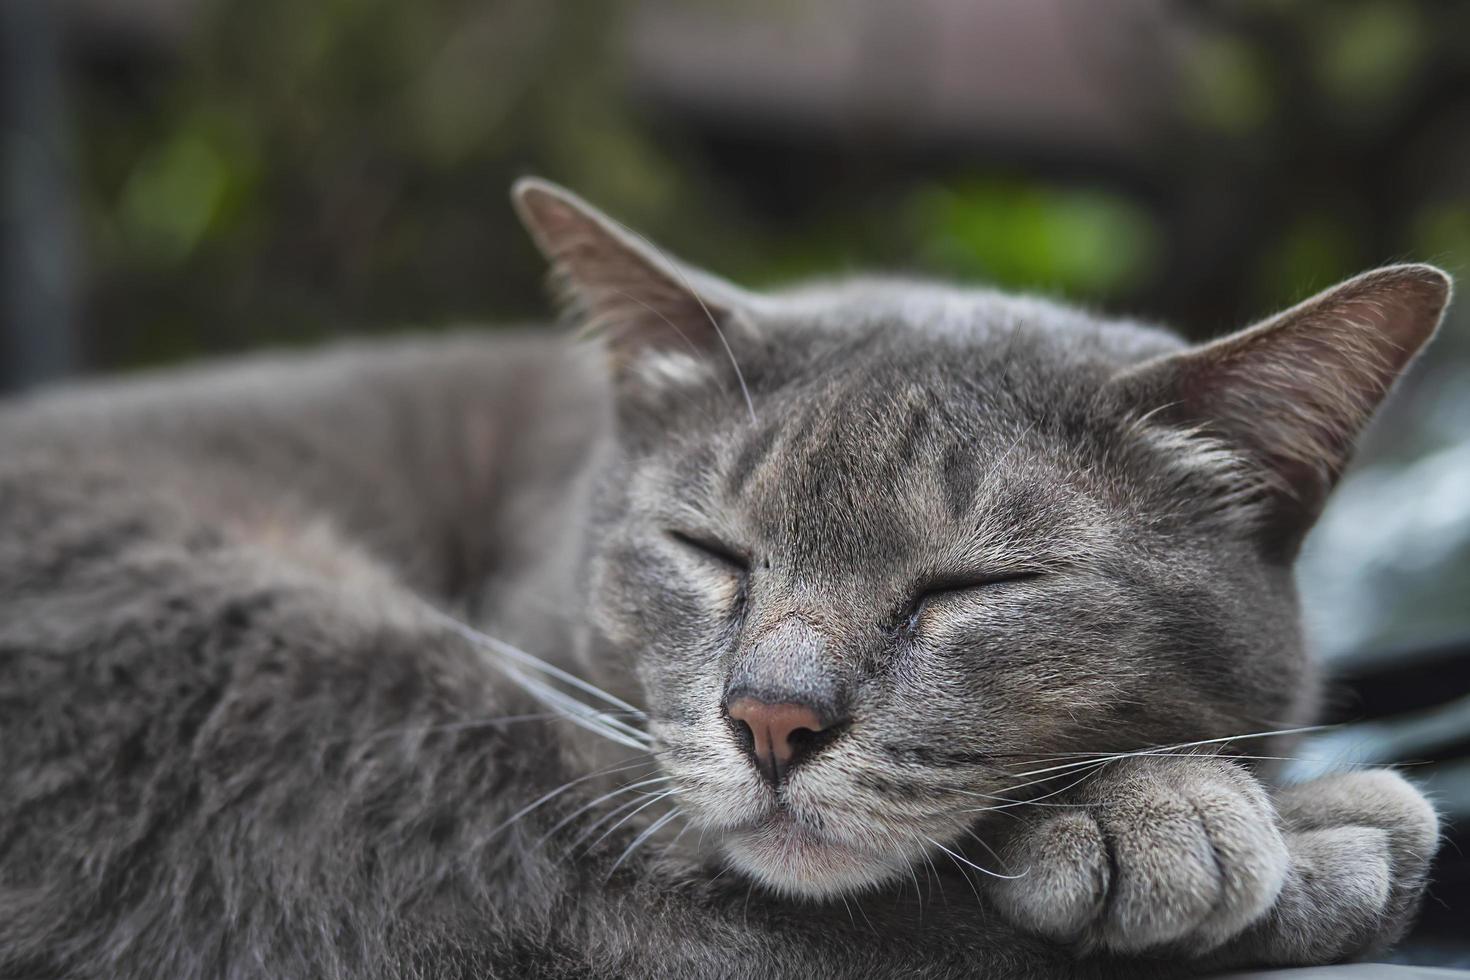 encantador gato dormido mascota tailandesa toma una siesta en un auto - concepto de animal doméstico foto